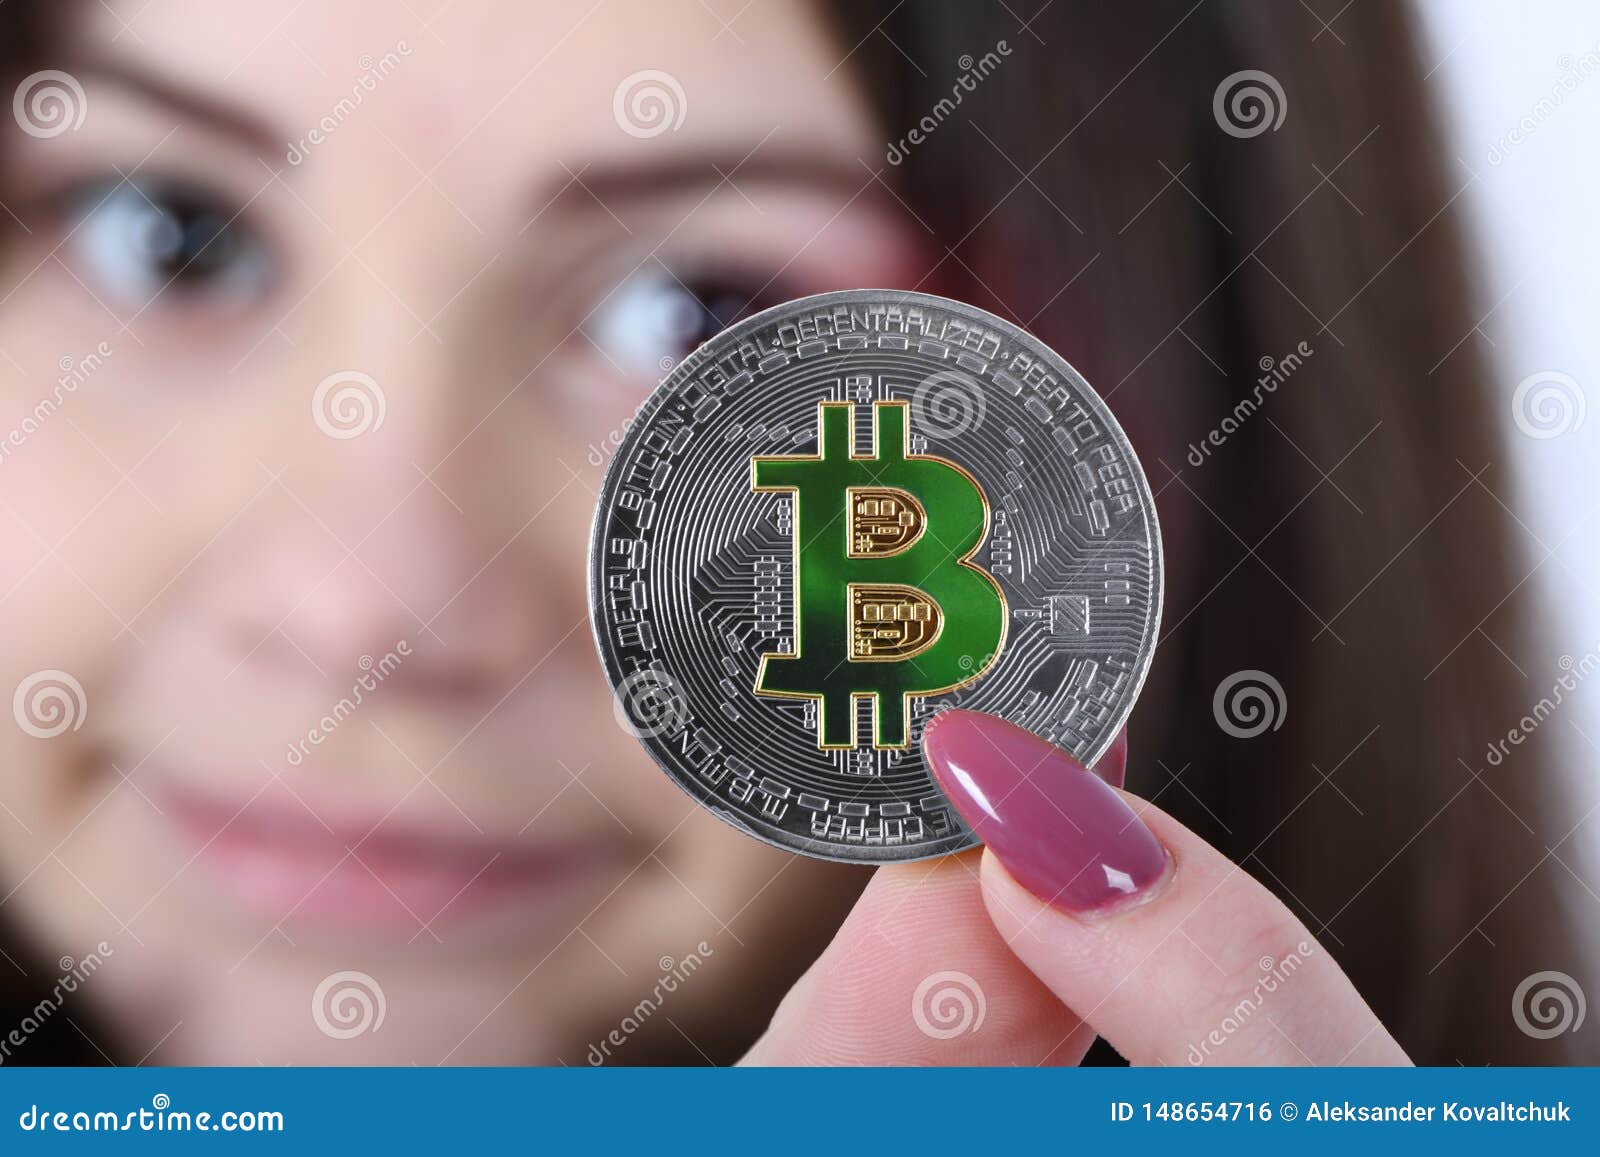 girl crypto coin